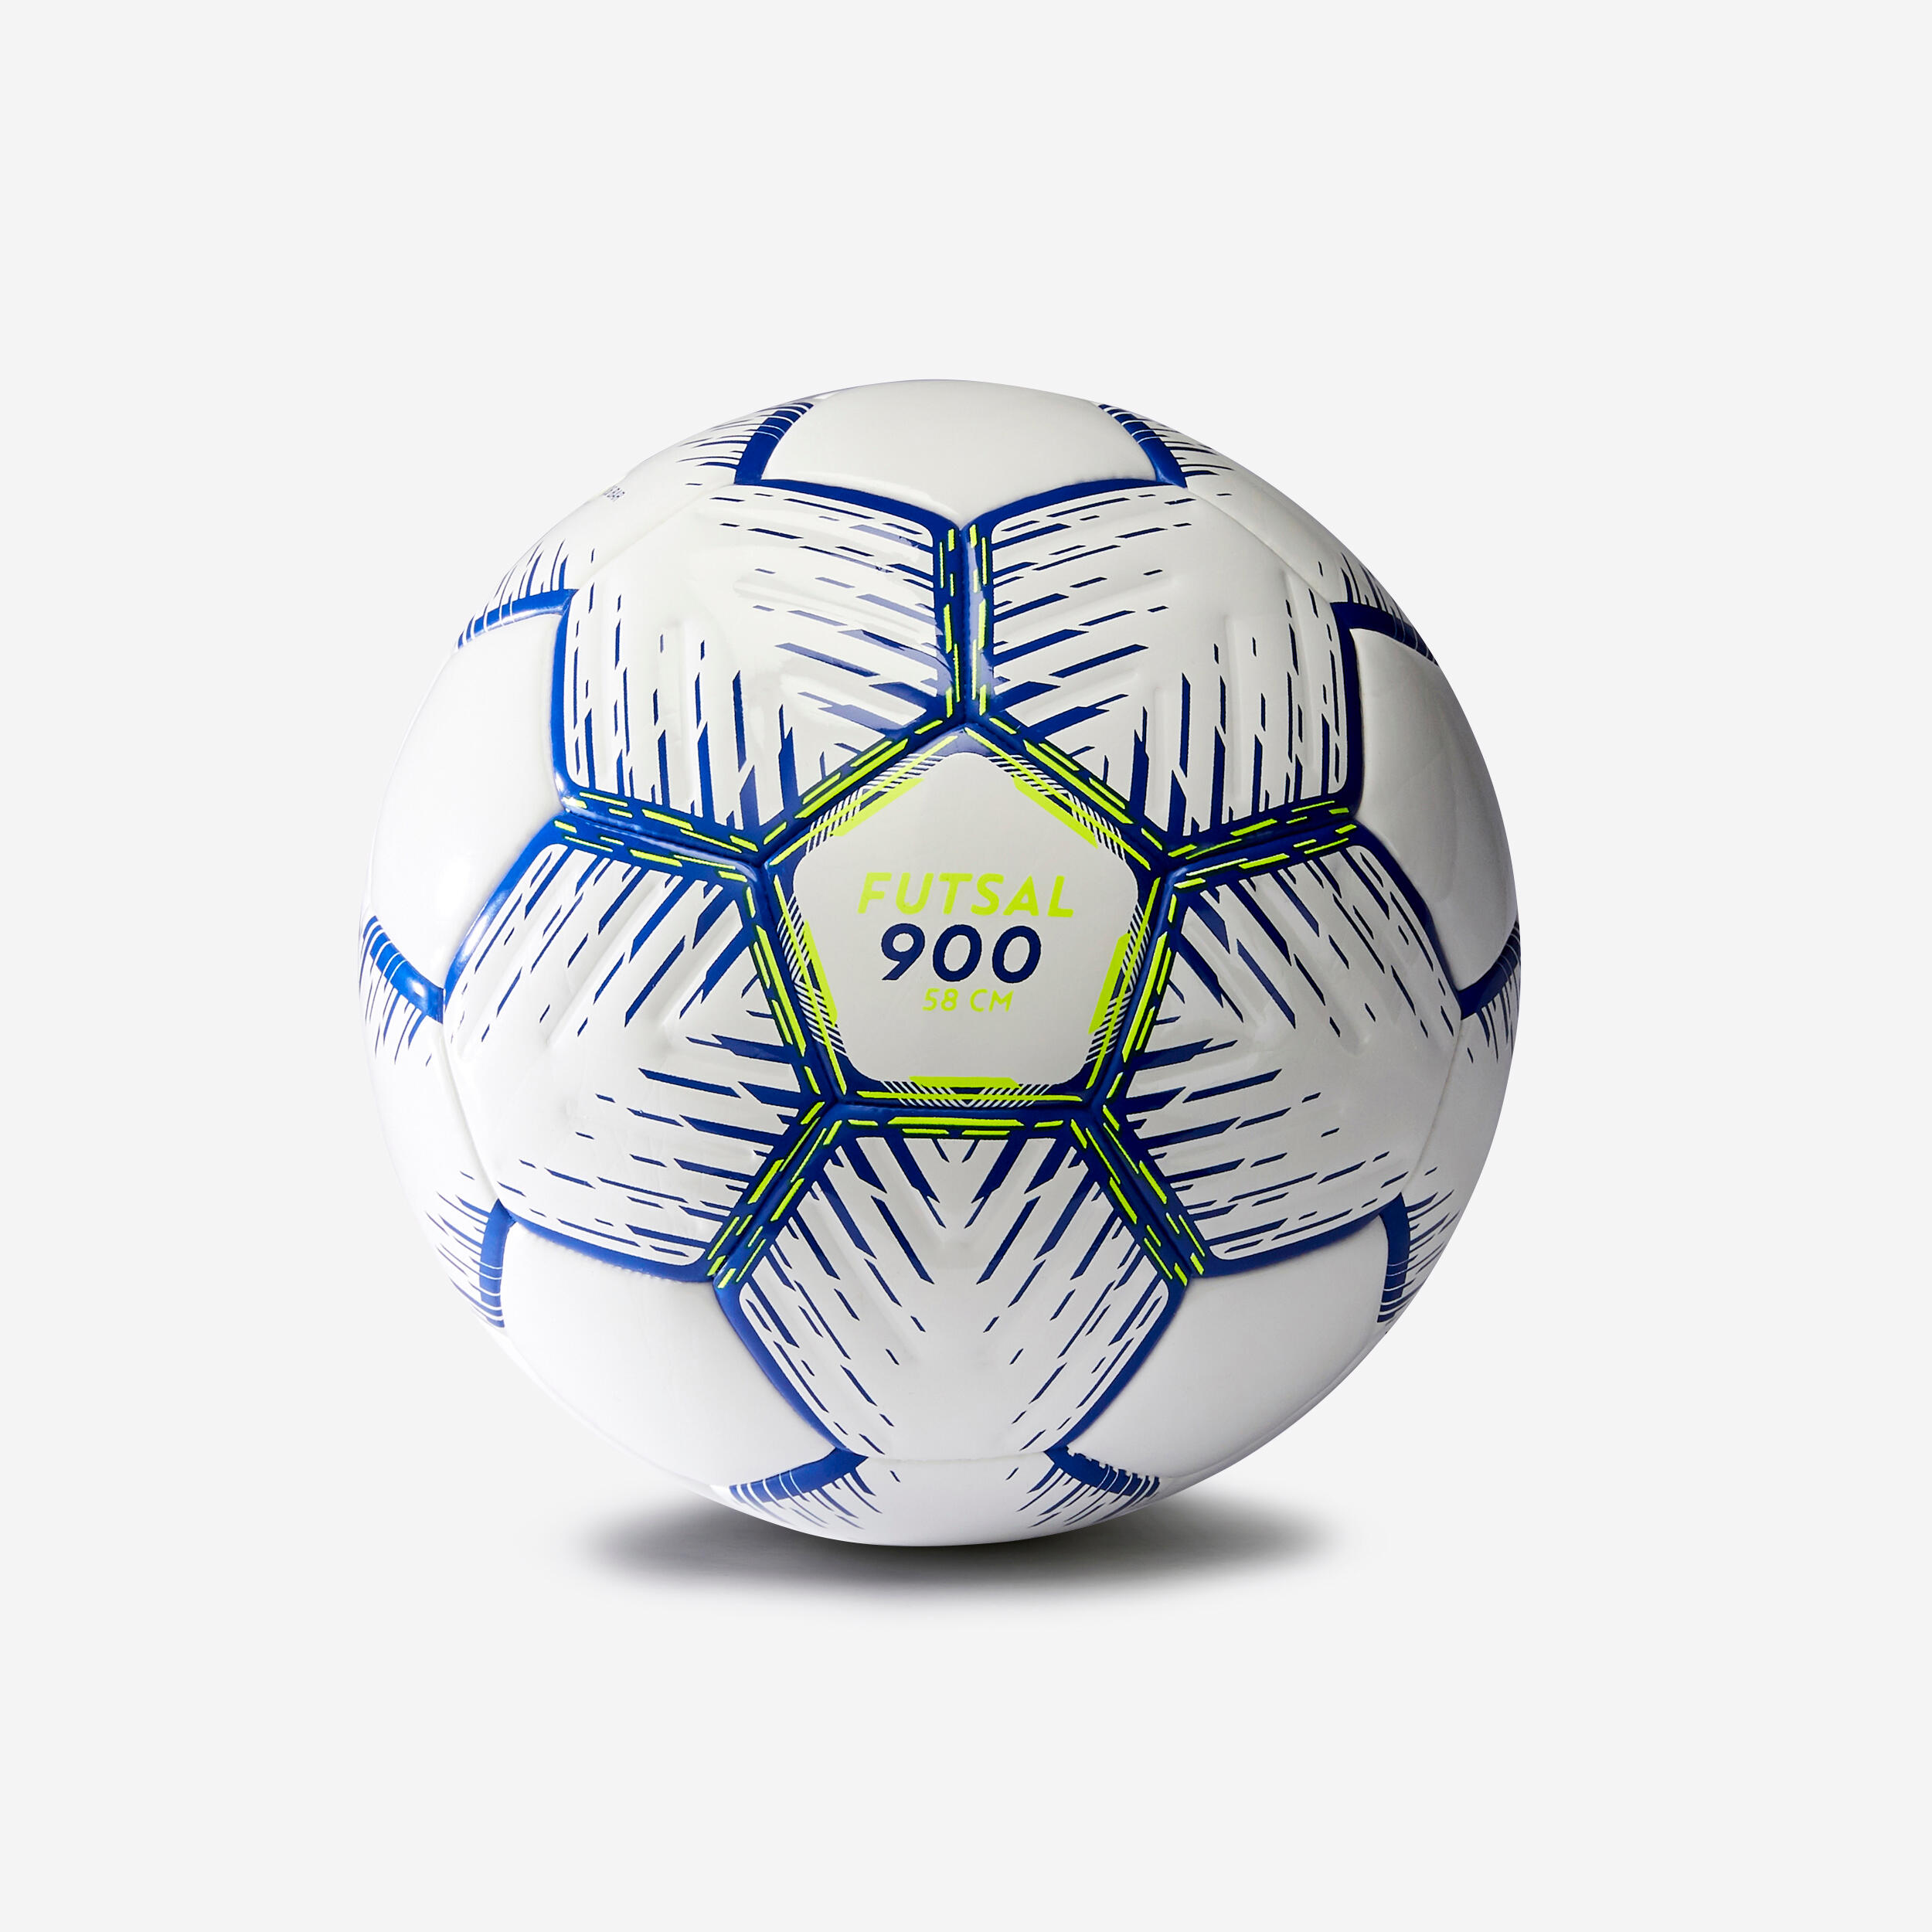 KIPSTA Ballon De Futsal Fs 900 58cm -